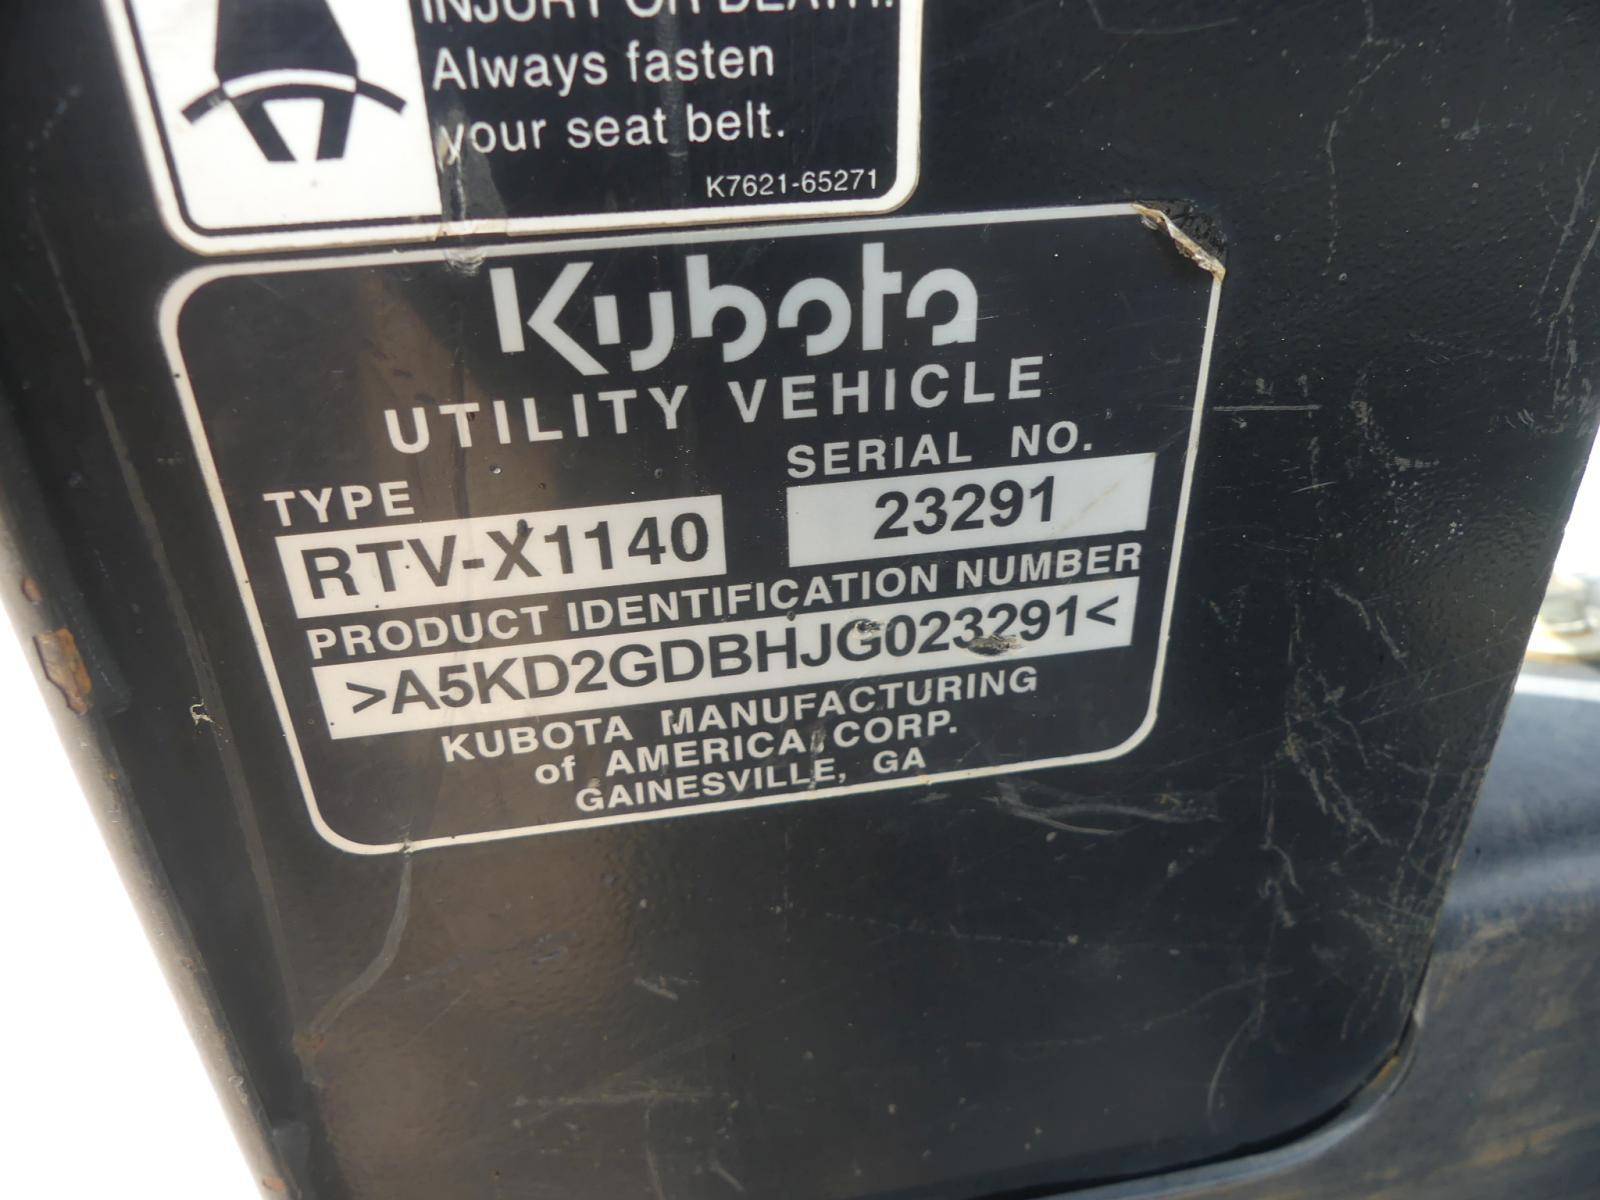 2018 Kubota RTVX1140 4WD Utility Vehicle, s/n A5KD2GDBHJG023291 (No Title -